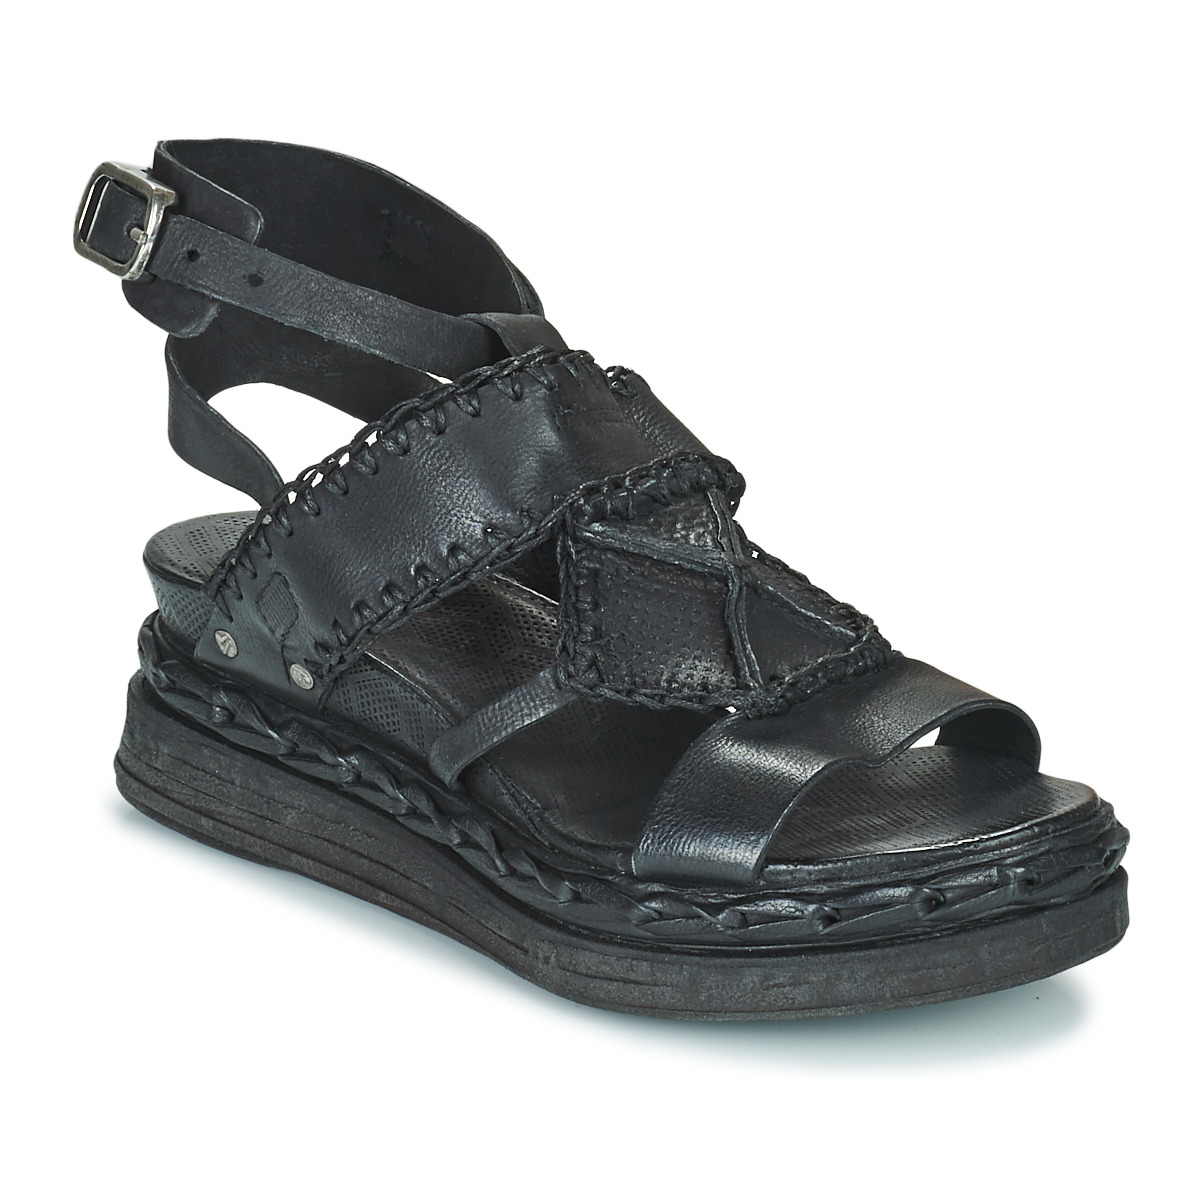 Παπούτσια Γυναίκα Σανδάλια / Πέδιλα Airstep / A.S.98 LAGOS Black